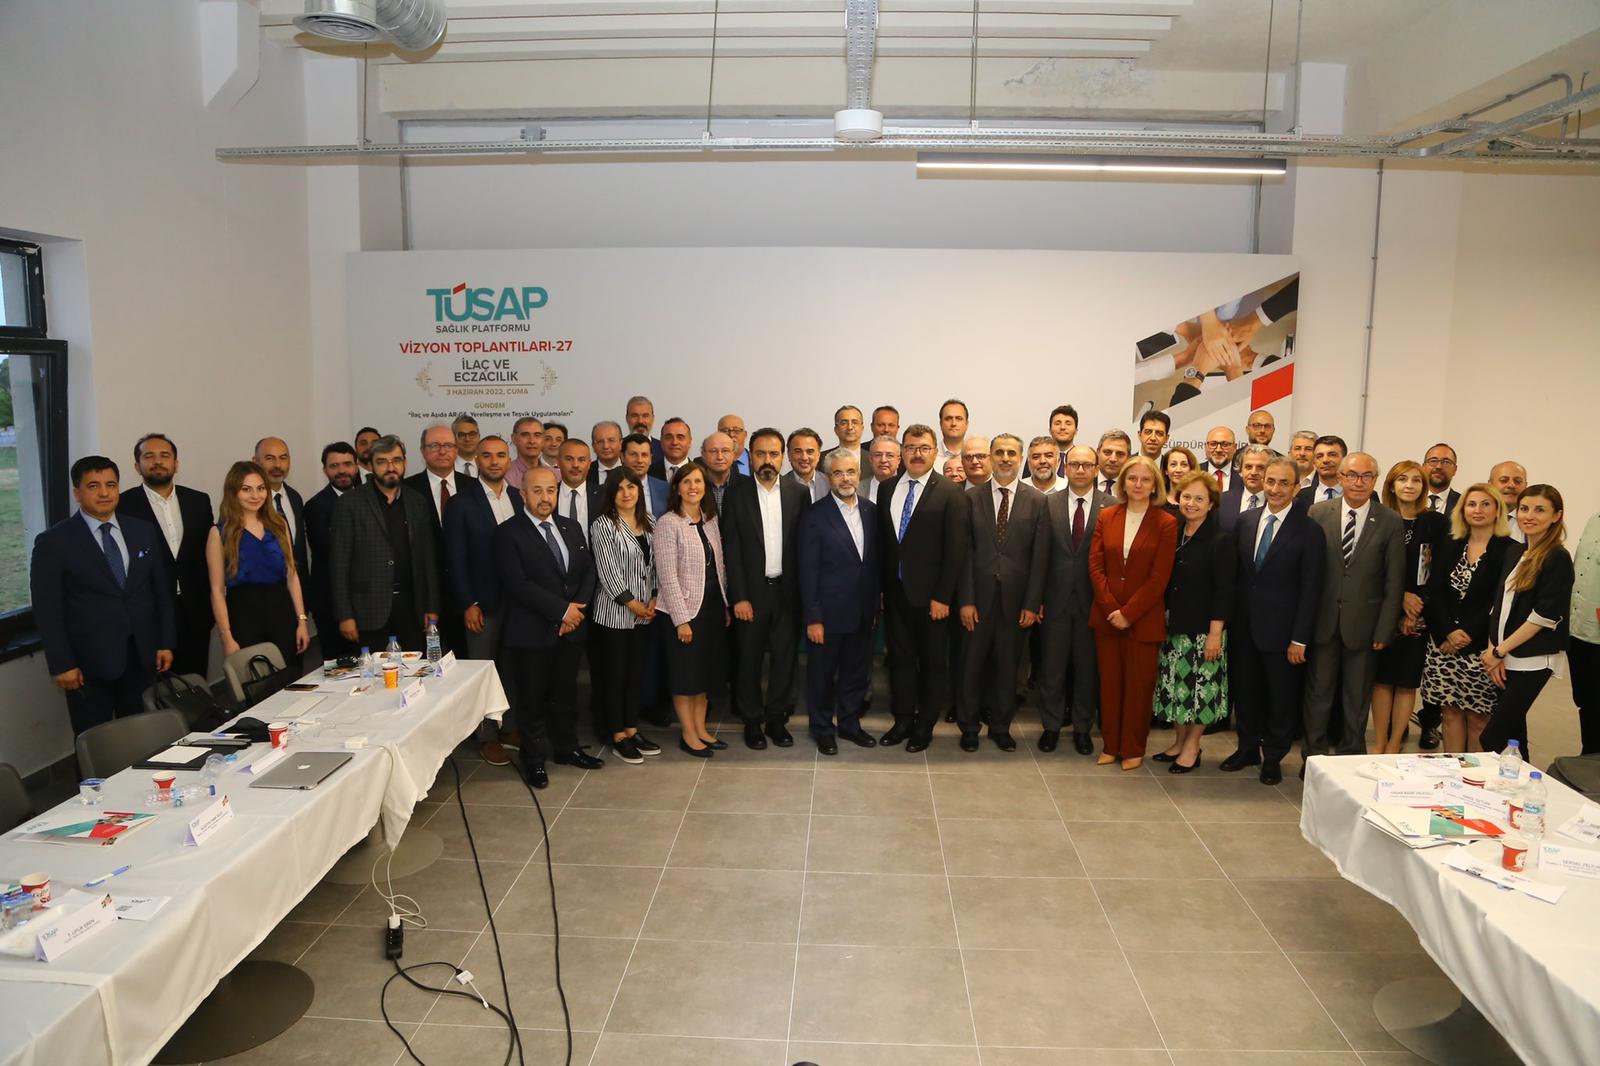  Türkiye Sağlık Platformu'nun (TÜSAP) İlaç ve Eczacılık Vizyon Toplantısı 